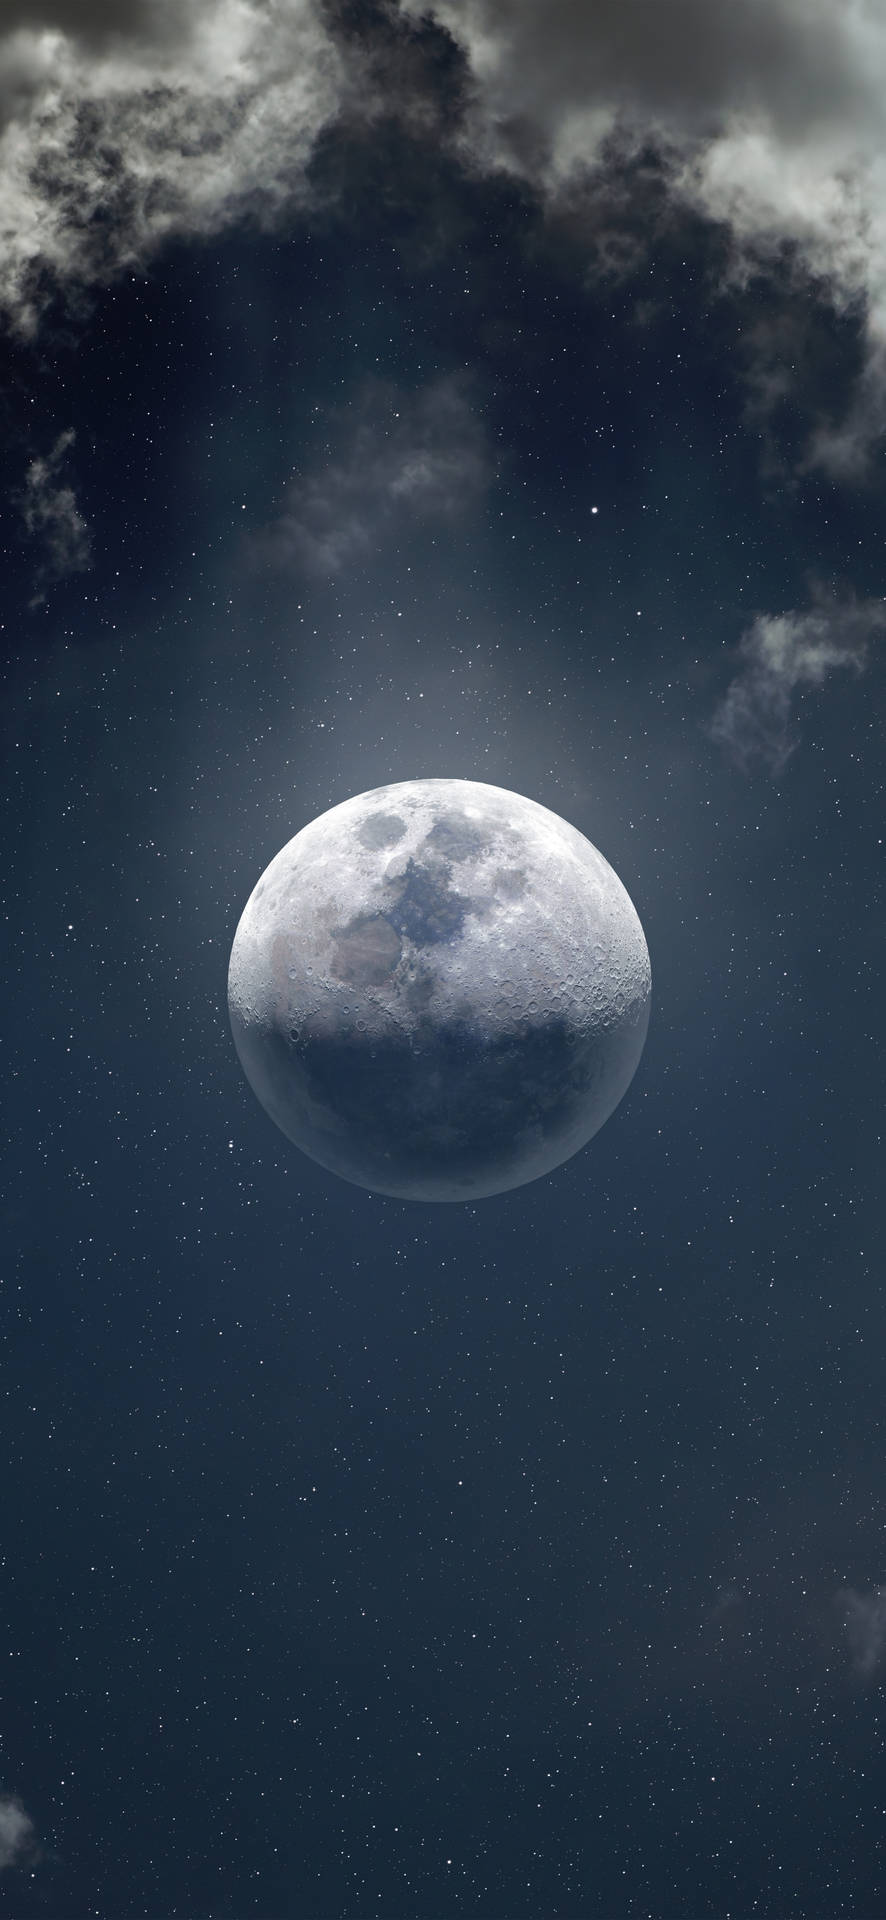 Stunning Full Moon Captured On Iphone 13 Pro